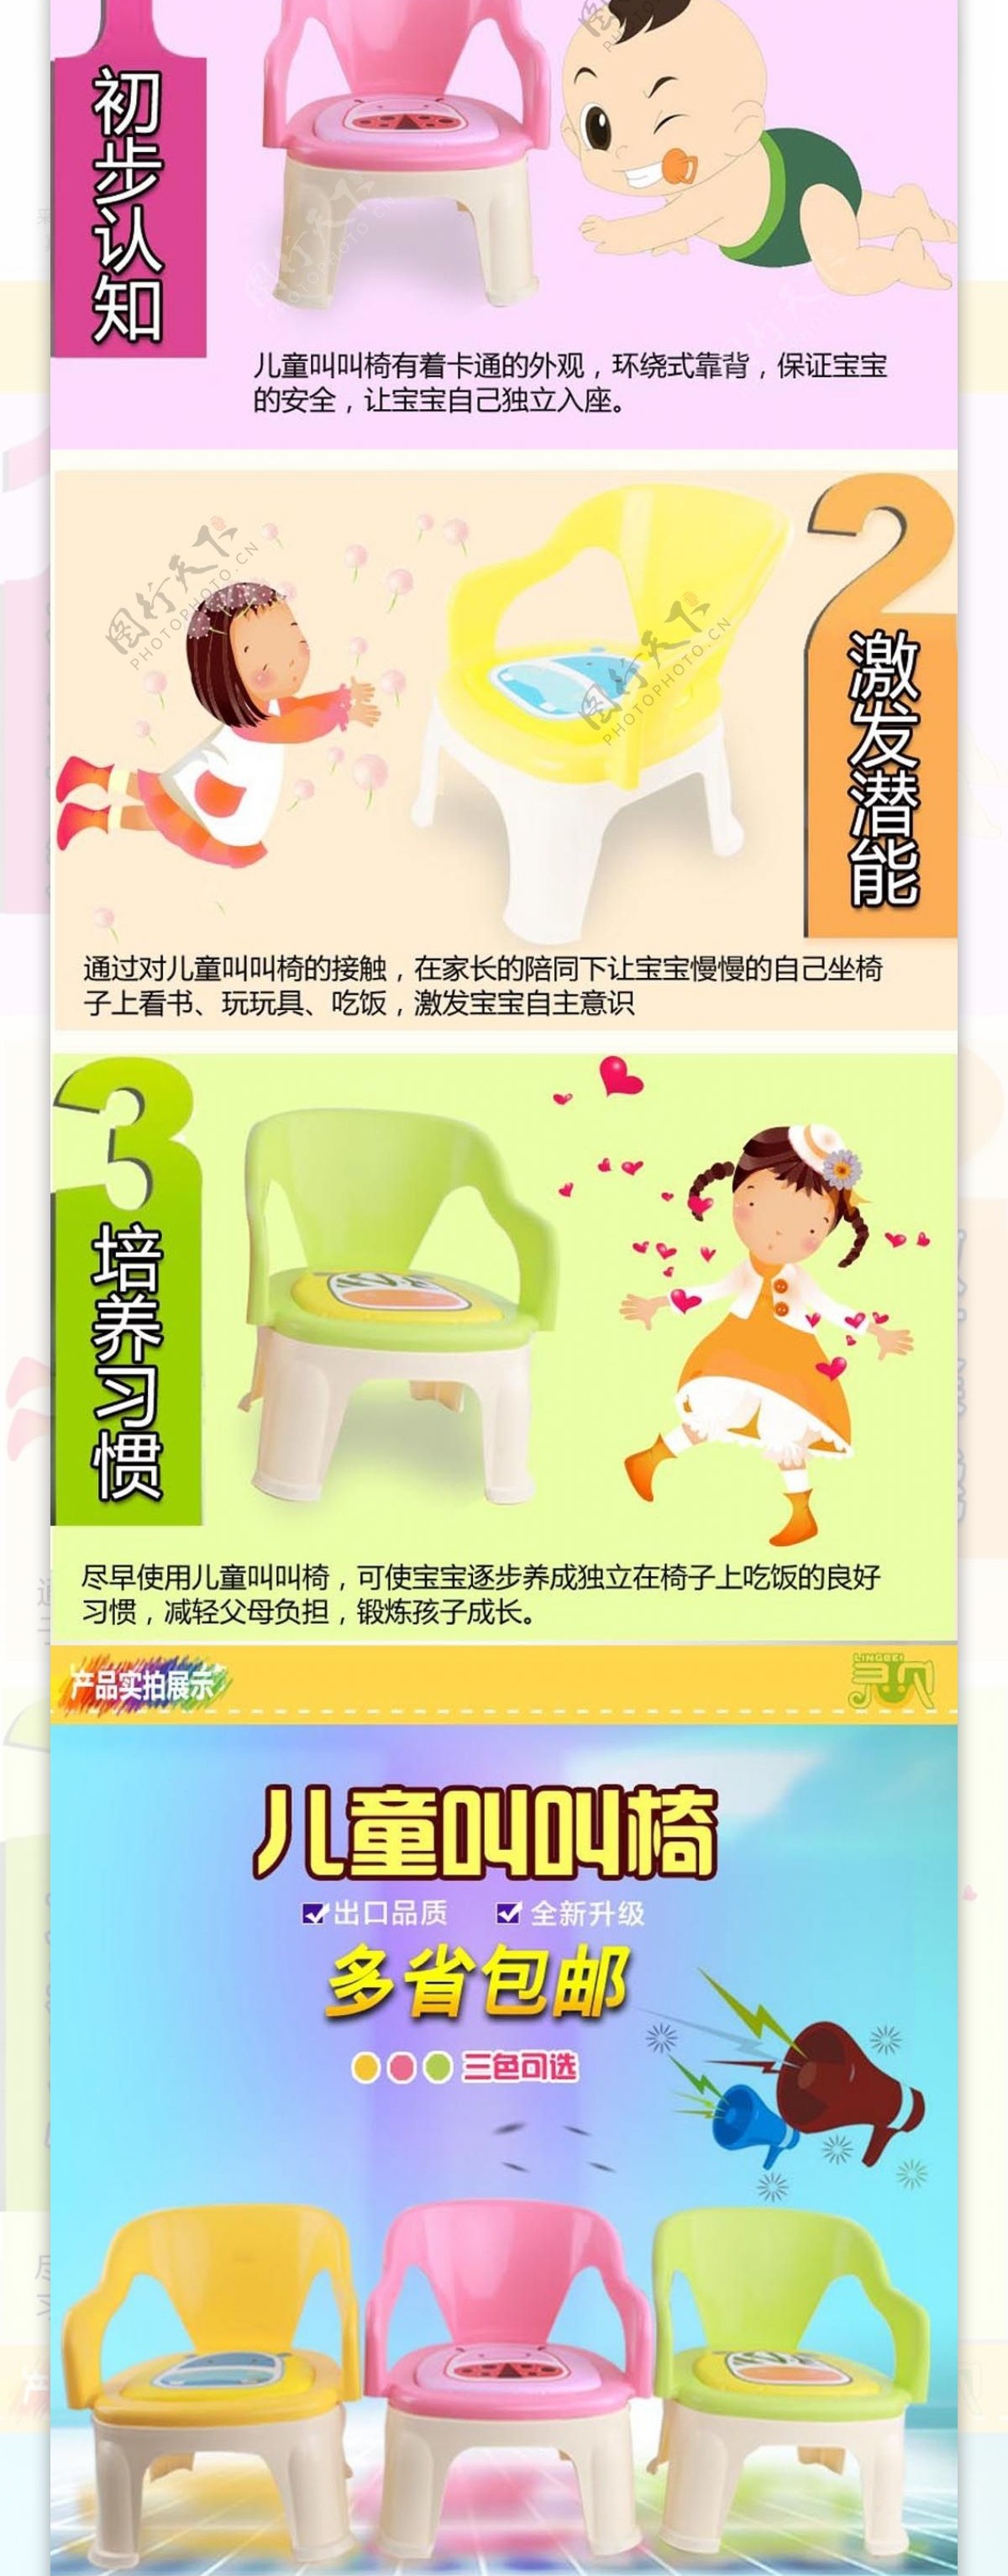 母婴用品儿童小椅子详情页设计图片